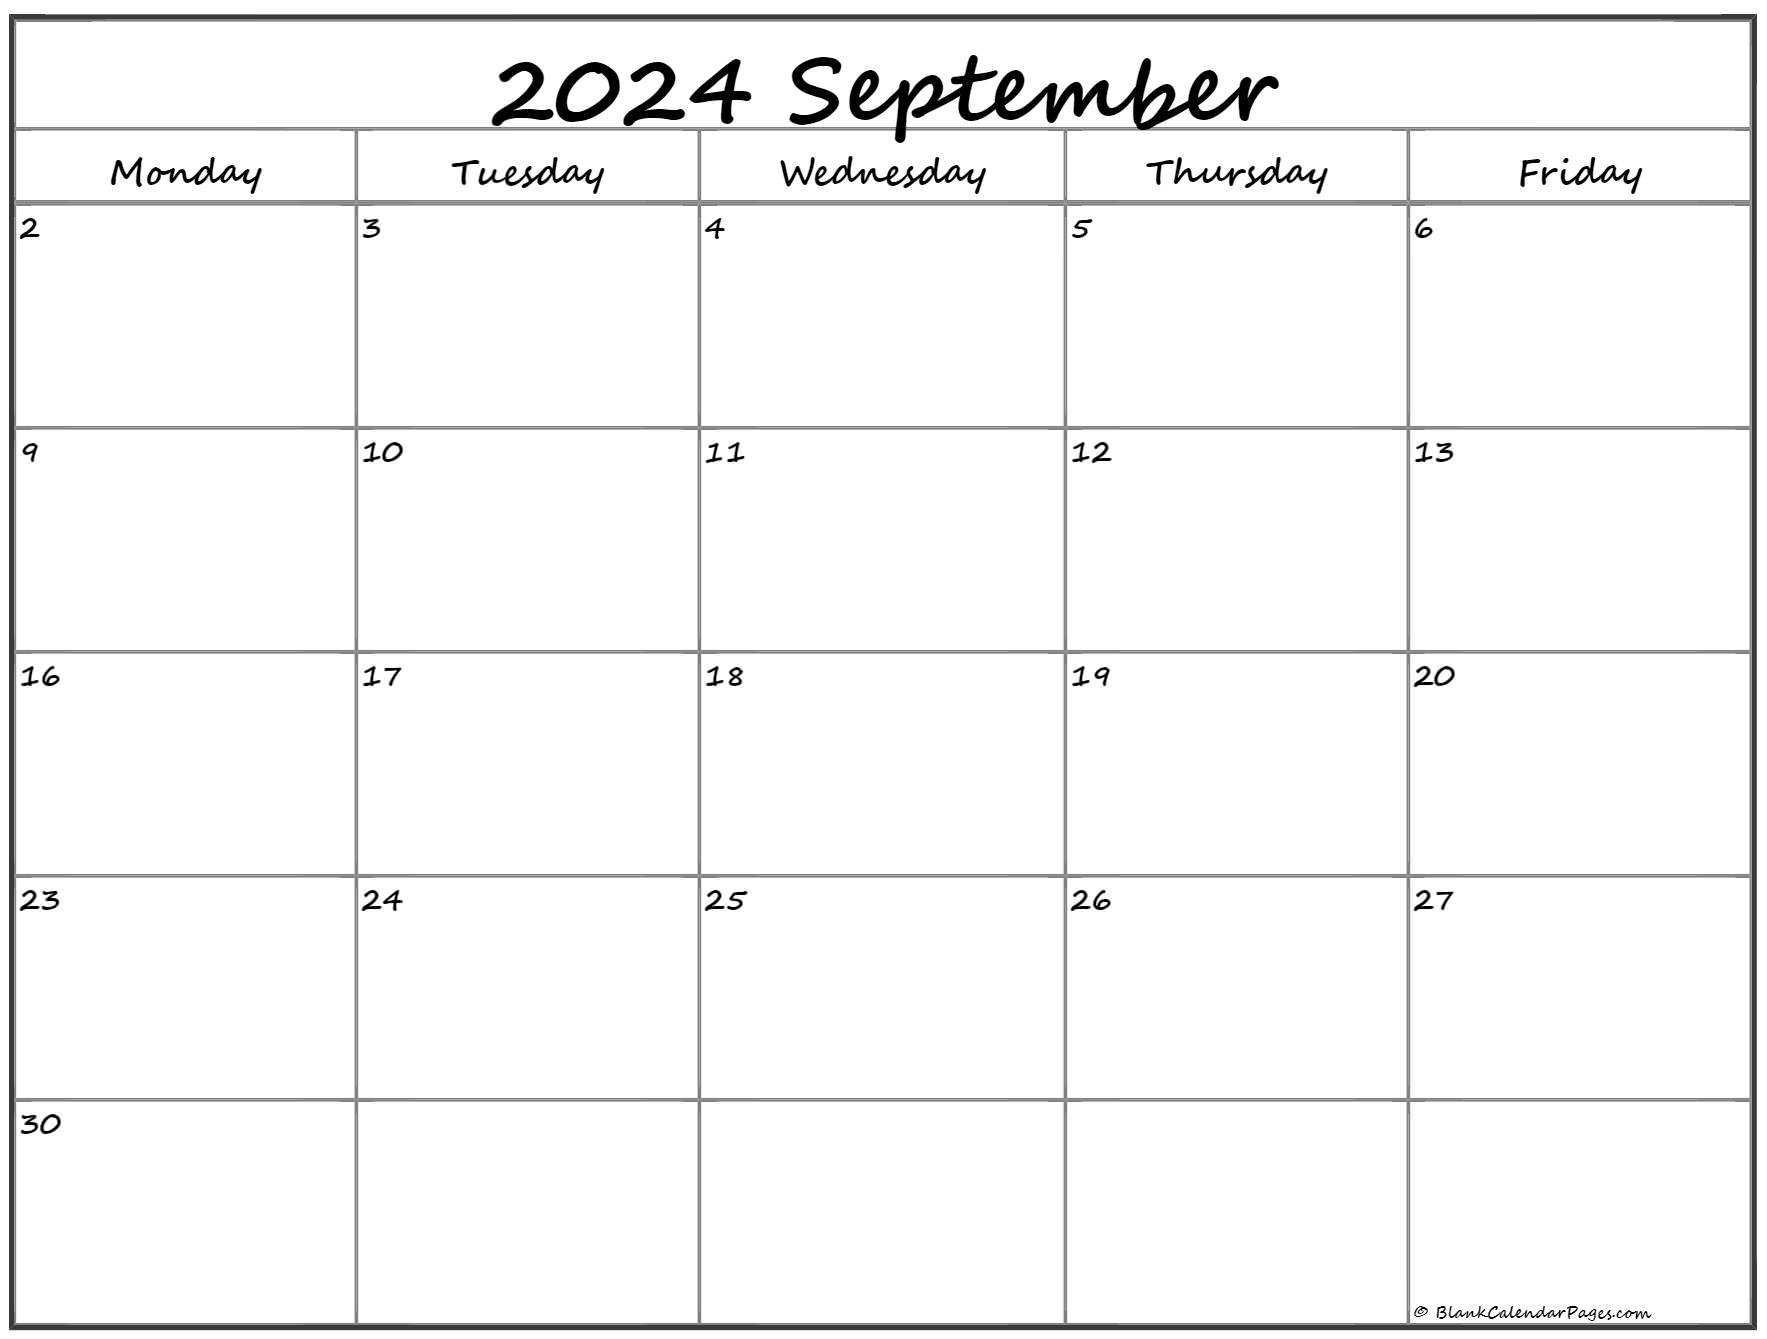 September 2020 Monday Calendar